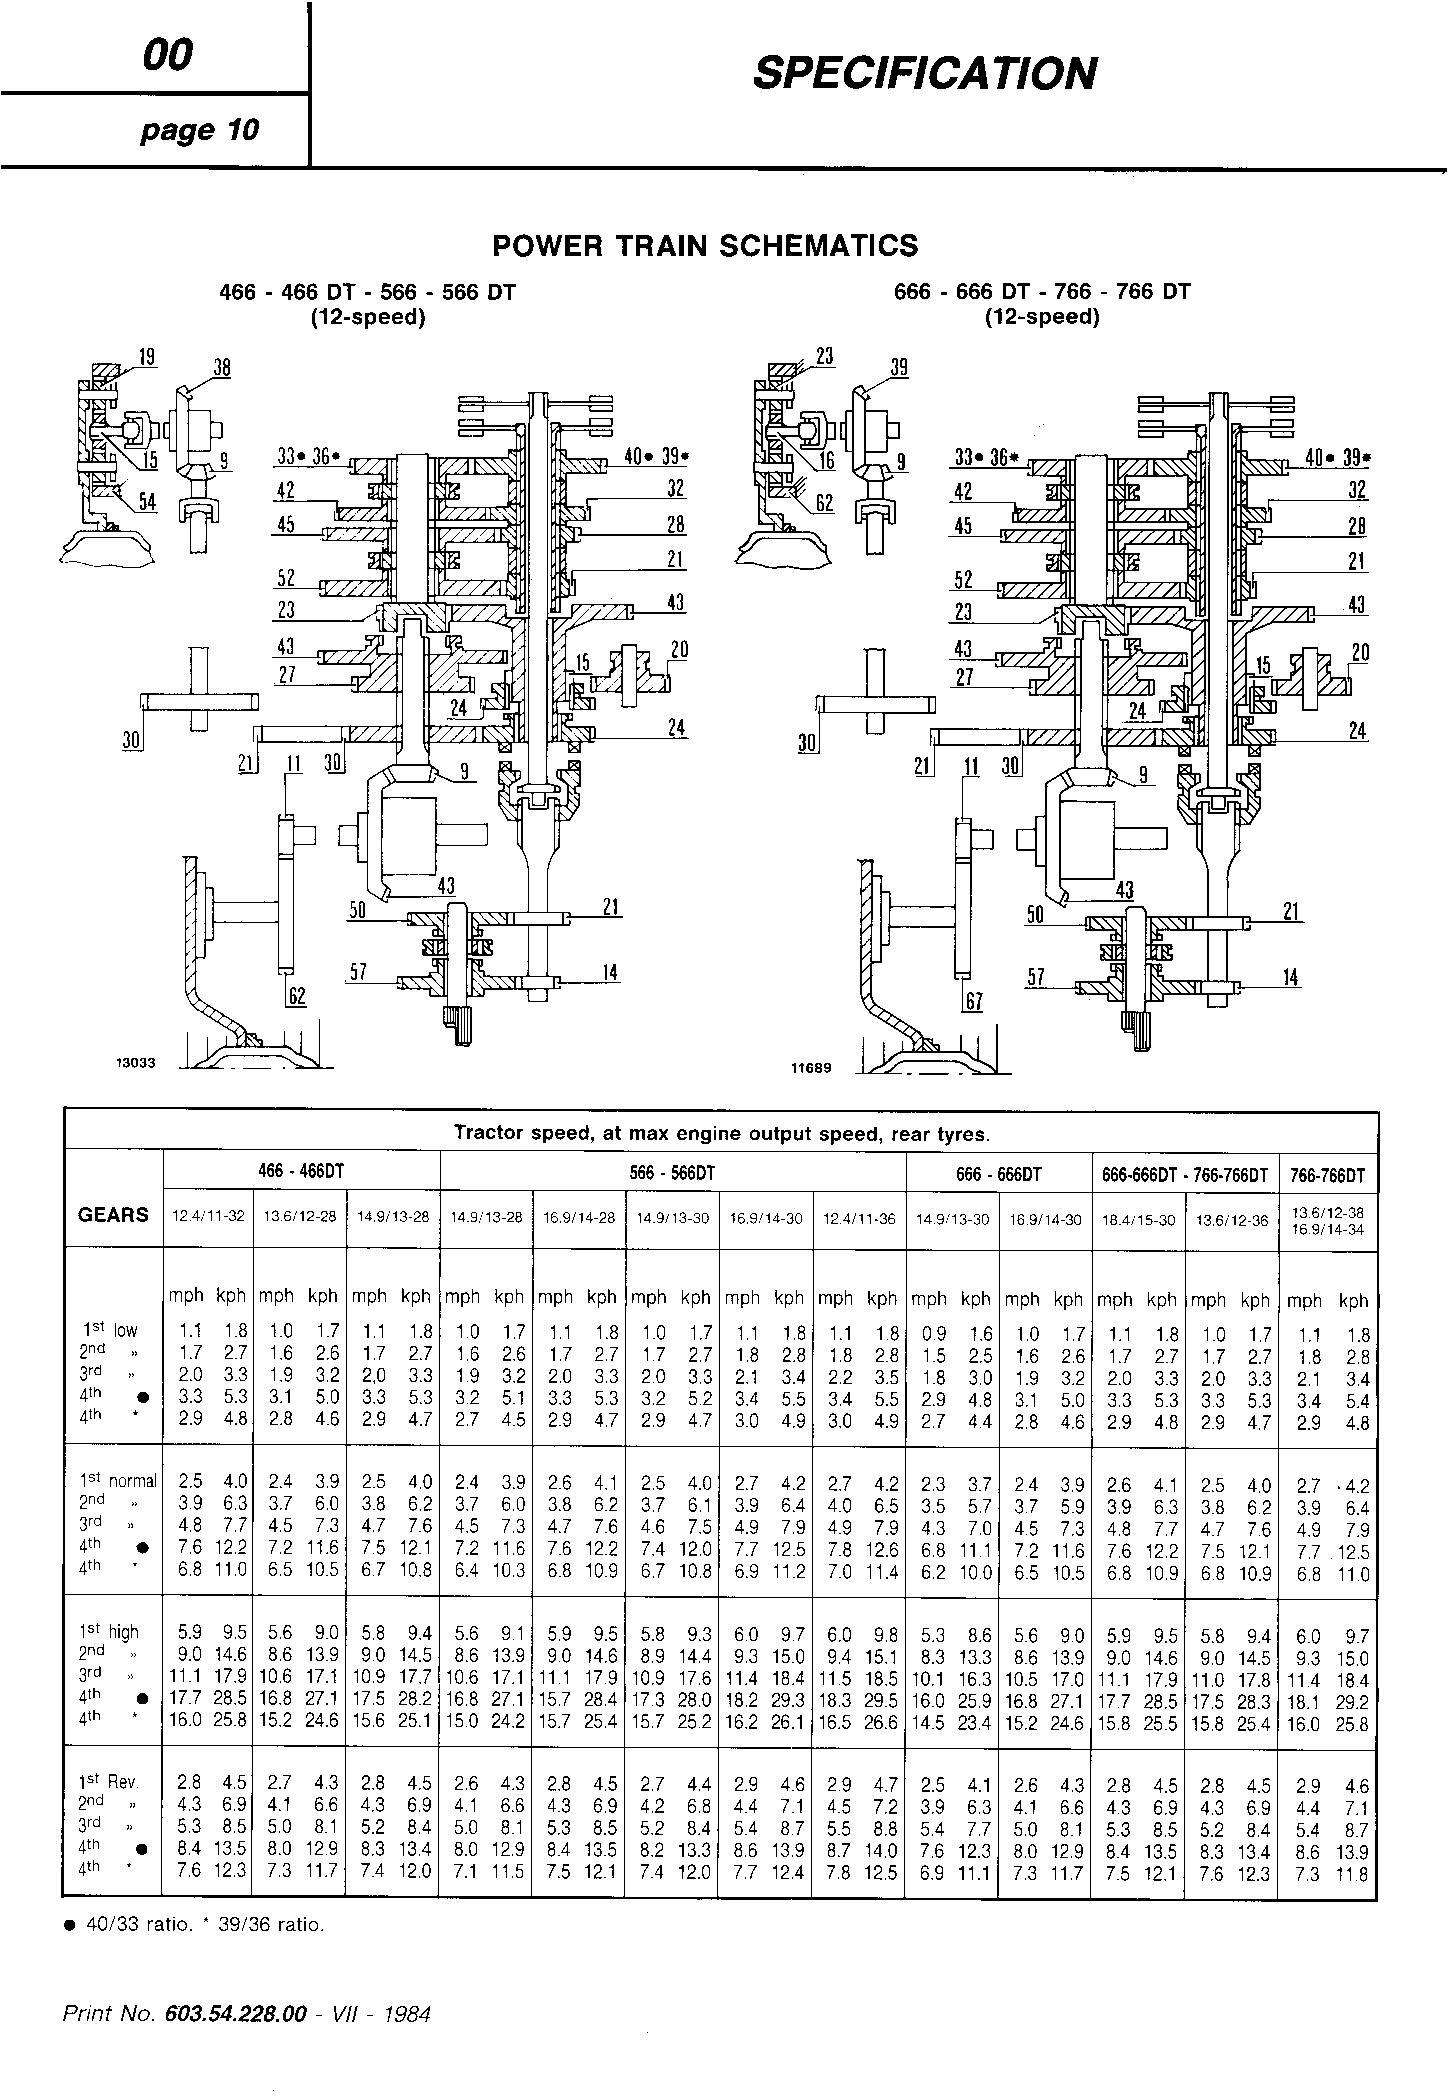 Fiat 466, 466DT, 566, 566DT, 666, 666DT, 766, 766DT Tractor Service Manual (6035422800) - 2